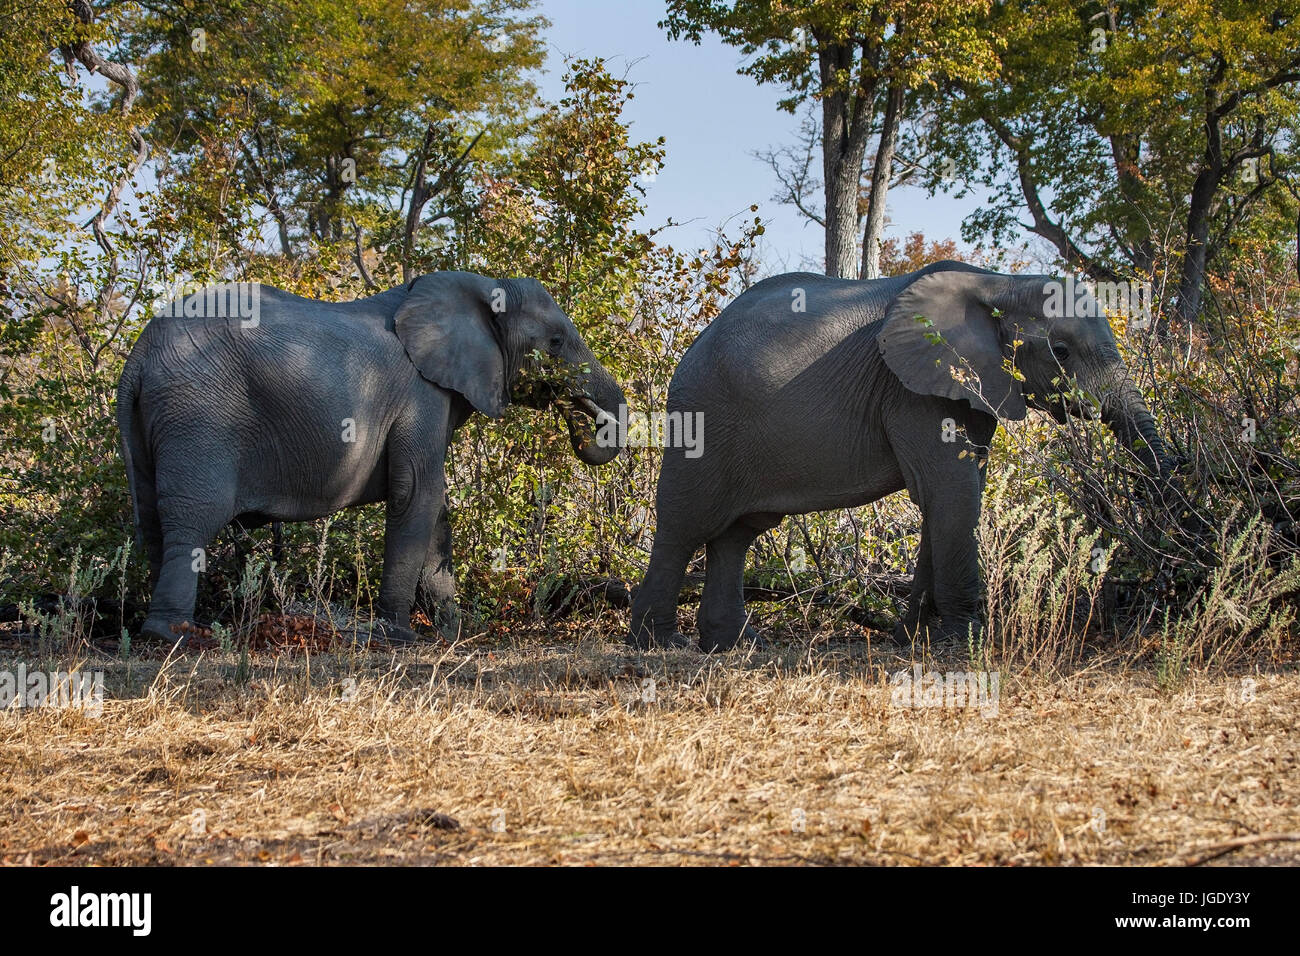 Elephants, Elephantidae Okawango delta, Botswana, Elefanten (Elephantidae) Okawango-Delta Stock Photo